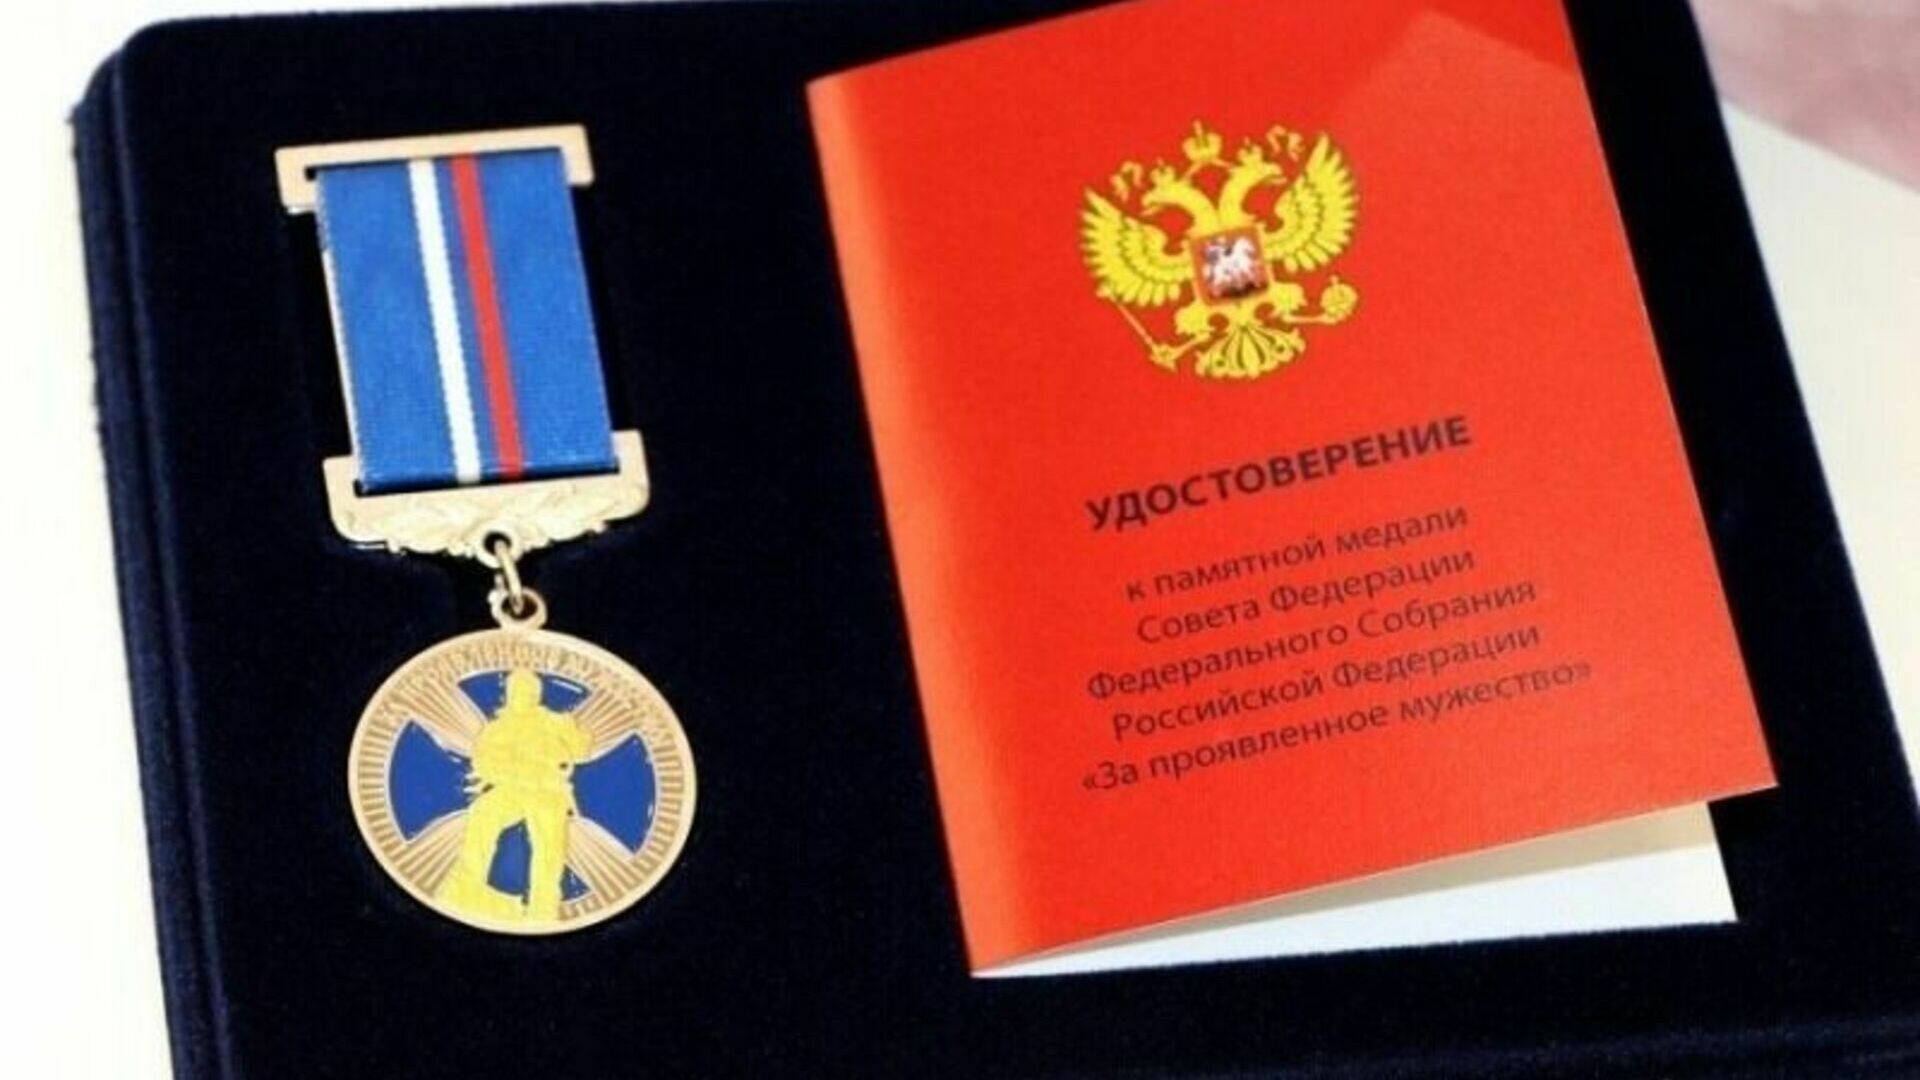 Юного героя, спасшего ребенка наградили медалью "За мужество" во Владивостоке